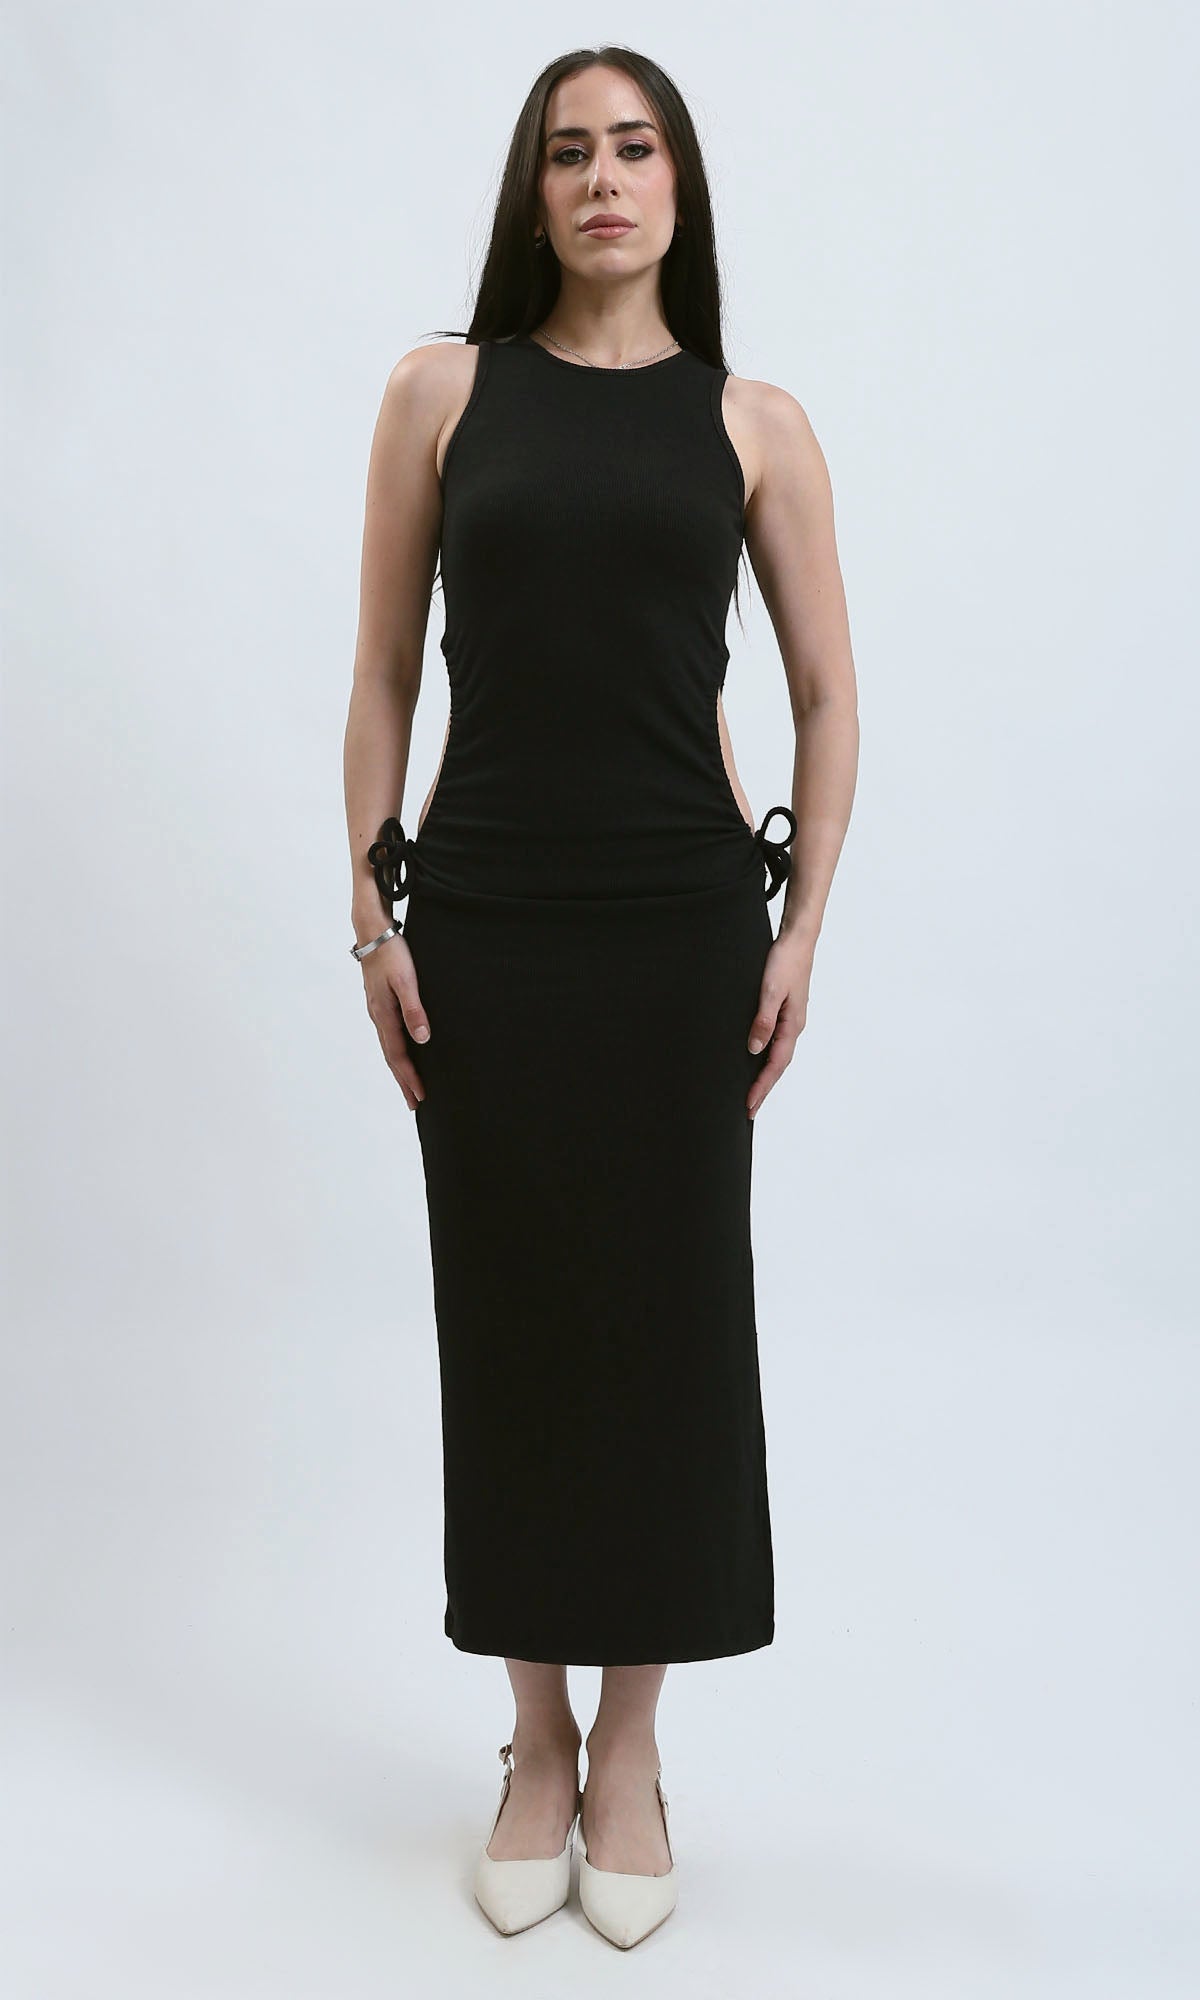 O182025 Round Neck Sleeveless Ribbed Maxi Dress - Black